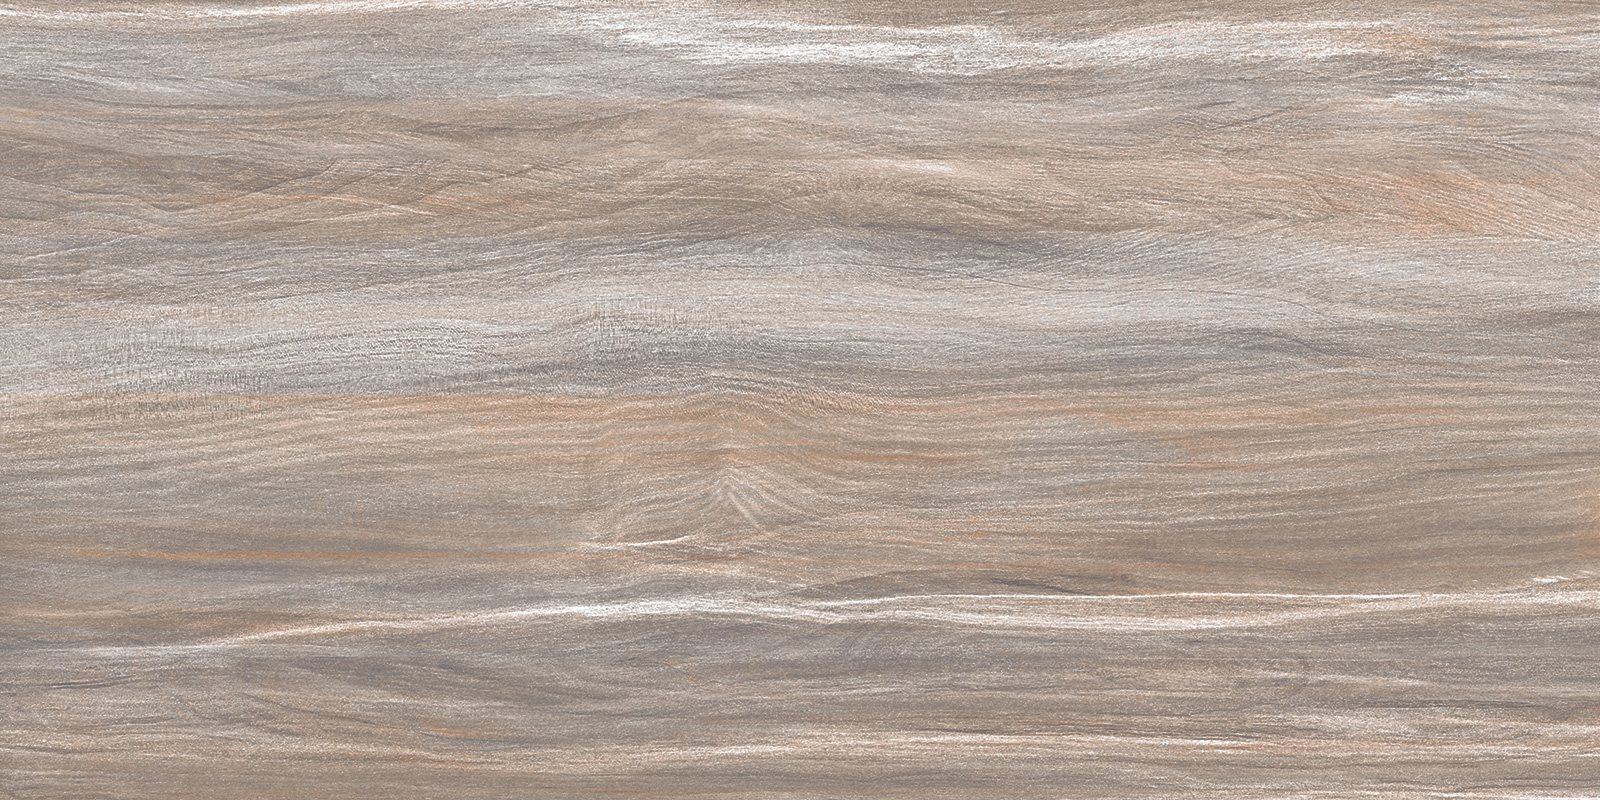 Настенная плитка AltaCera Esprit Wood 25x50 настенная плитка altacera interni grey 25x50